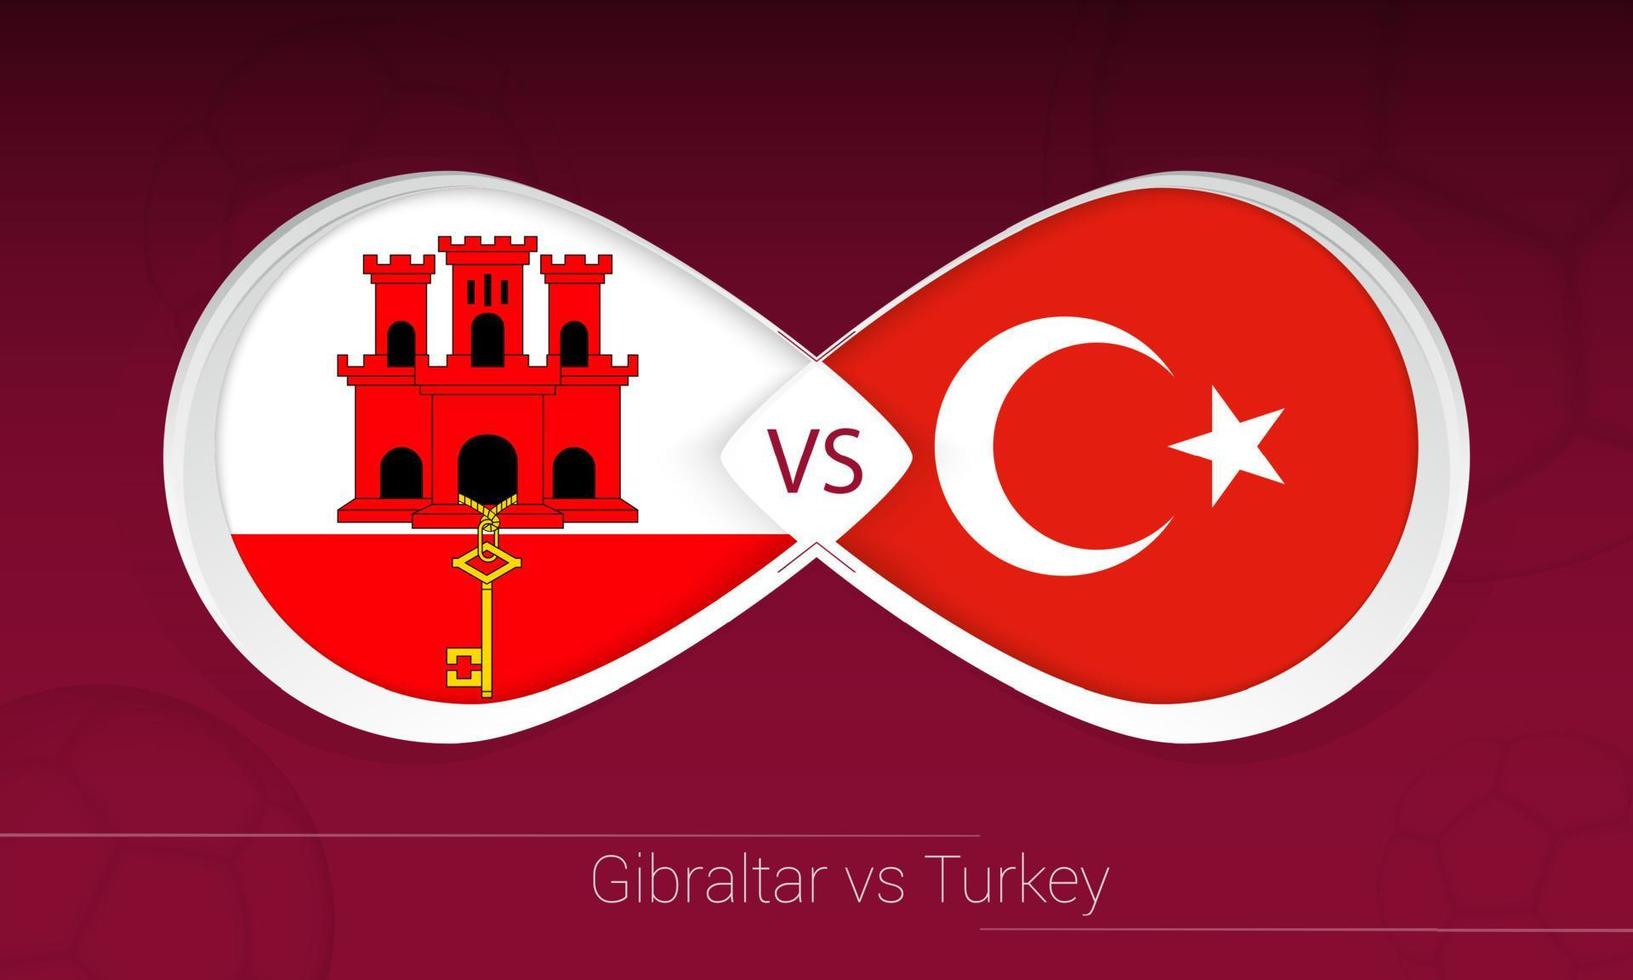 Gibilterra vs Turchia nella competizione calcistica, girone g. contro l'icona sullo sfondo del calcio. vettore